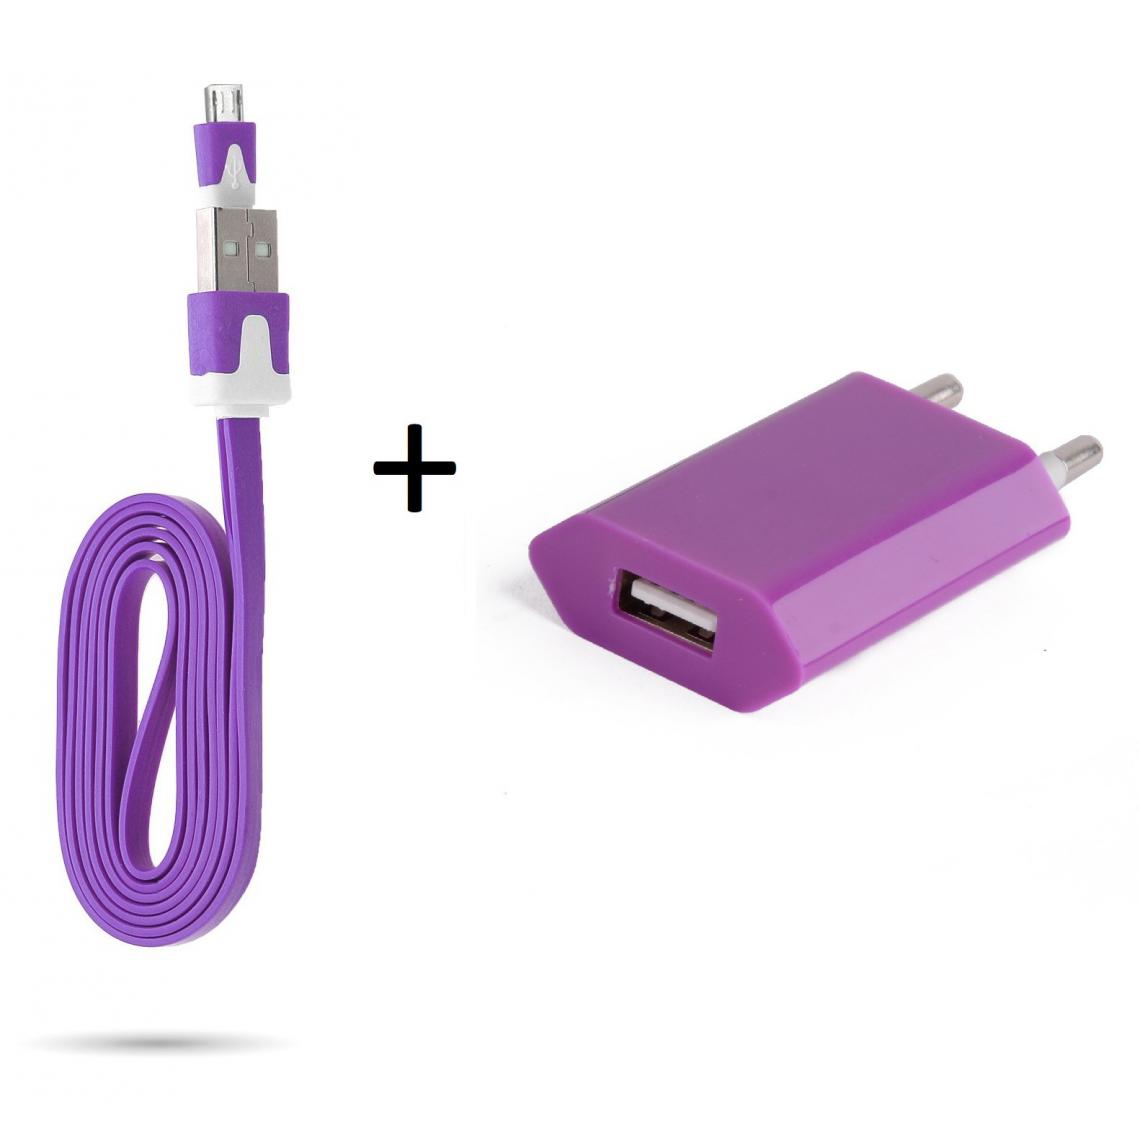 Shot - Cable Noodle 1m Chargeur + Prise Secteur pour GIONEE F9 Smartphone Micro USB Murale Pack Android (VIOLET) - Chargeur secteur téléphone